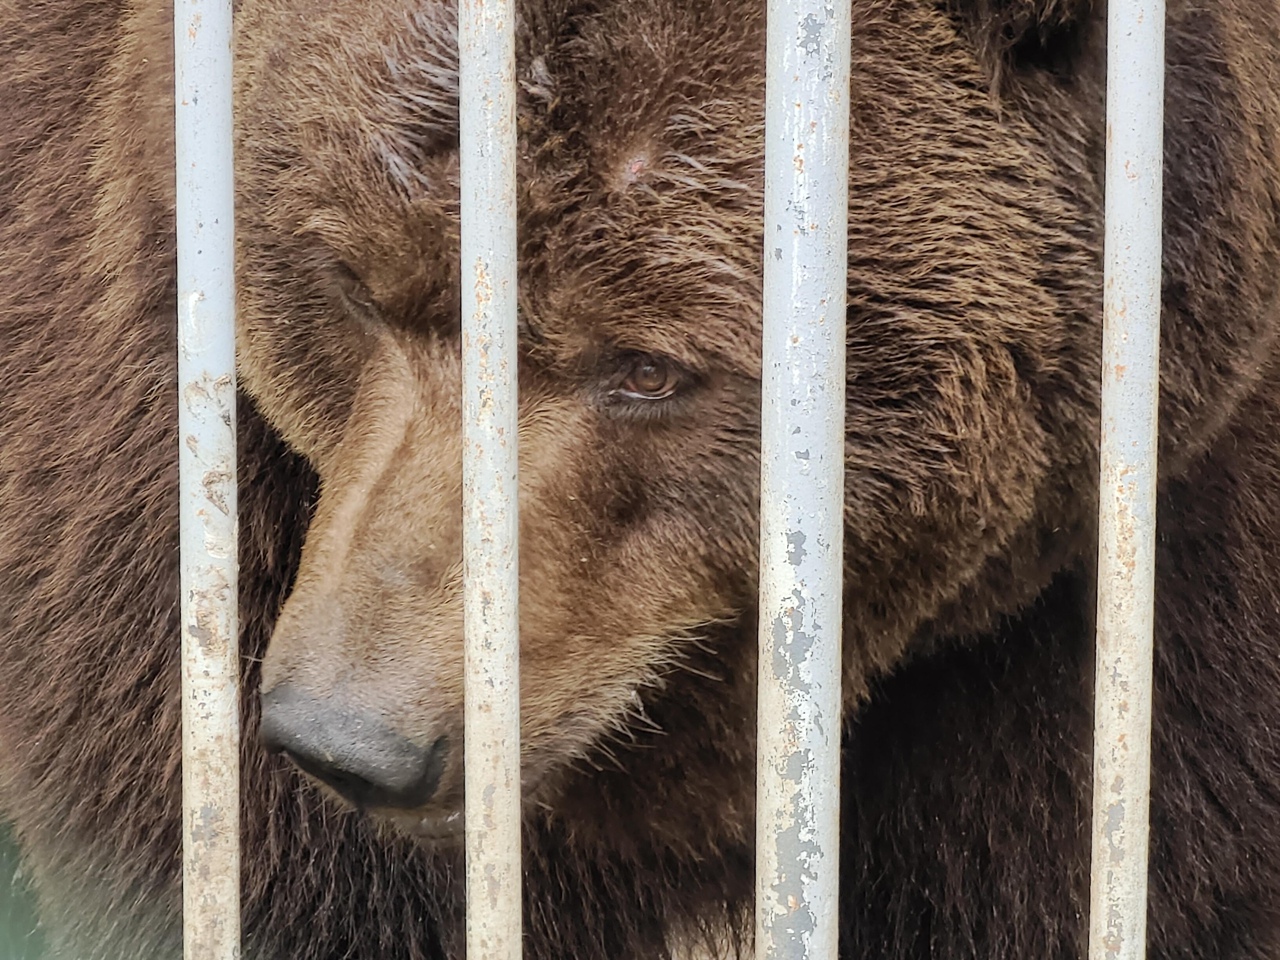 Придорожный медведь Малыш из Челябинского зоопарка станцевал нижний брейк